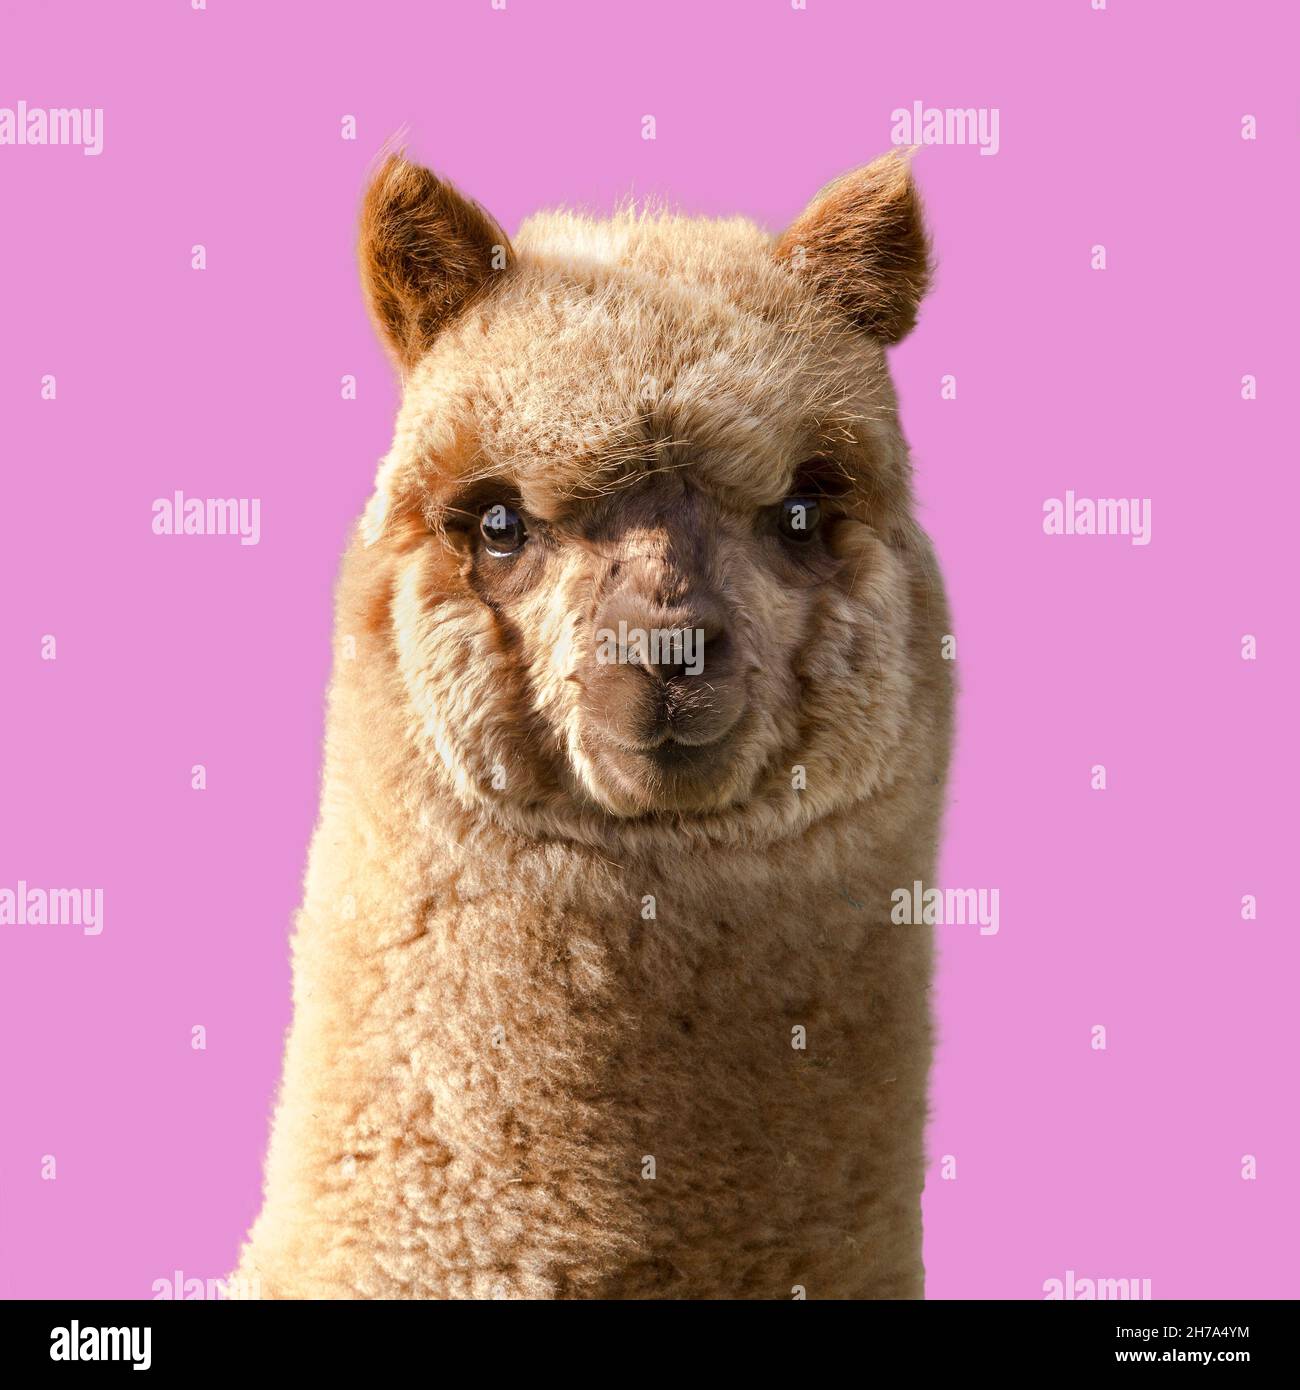 Cute alpaca giovane. Ritratto di Llama su sfondo rosa. Foto Stock